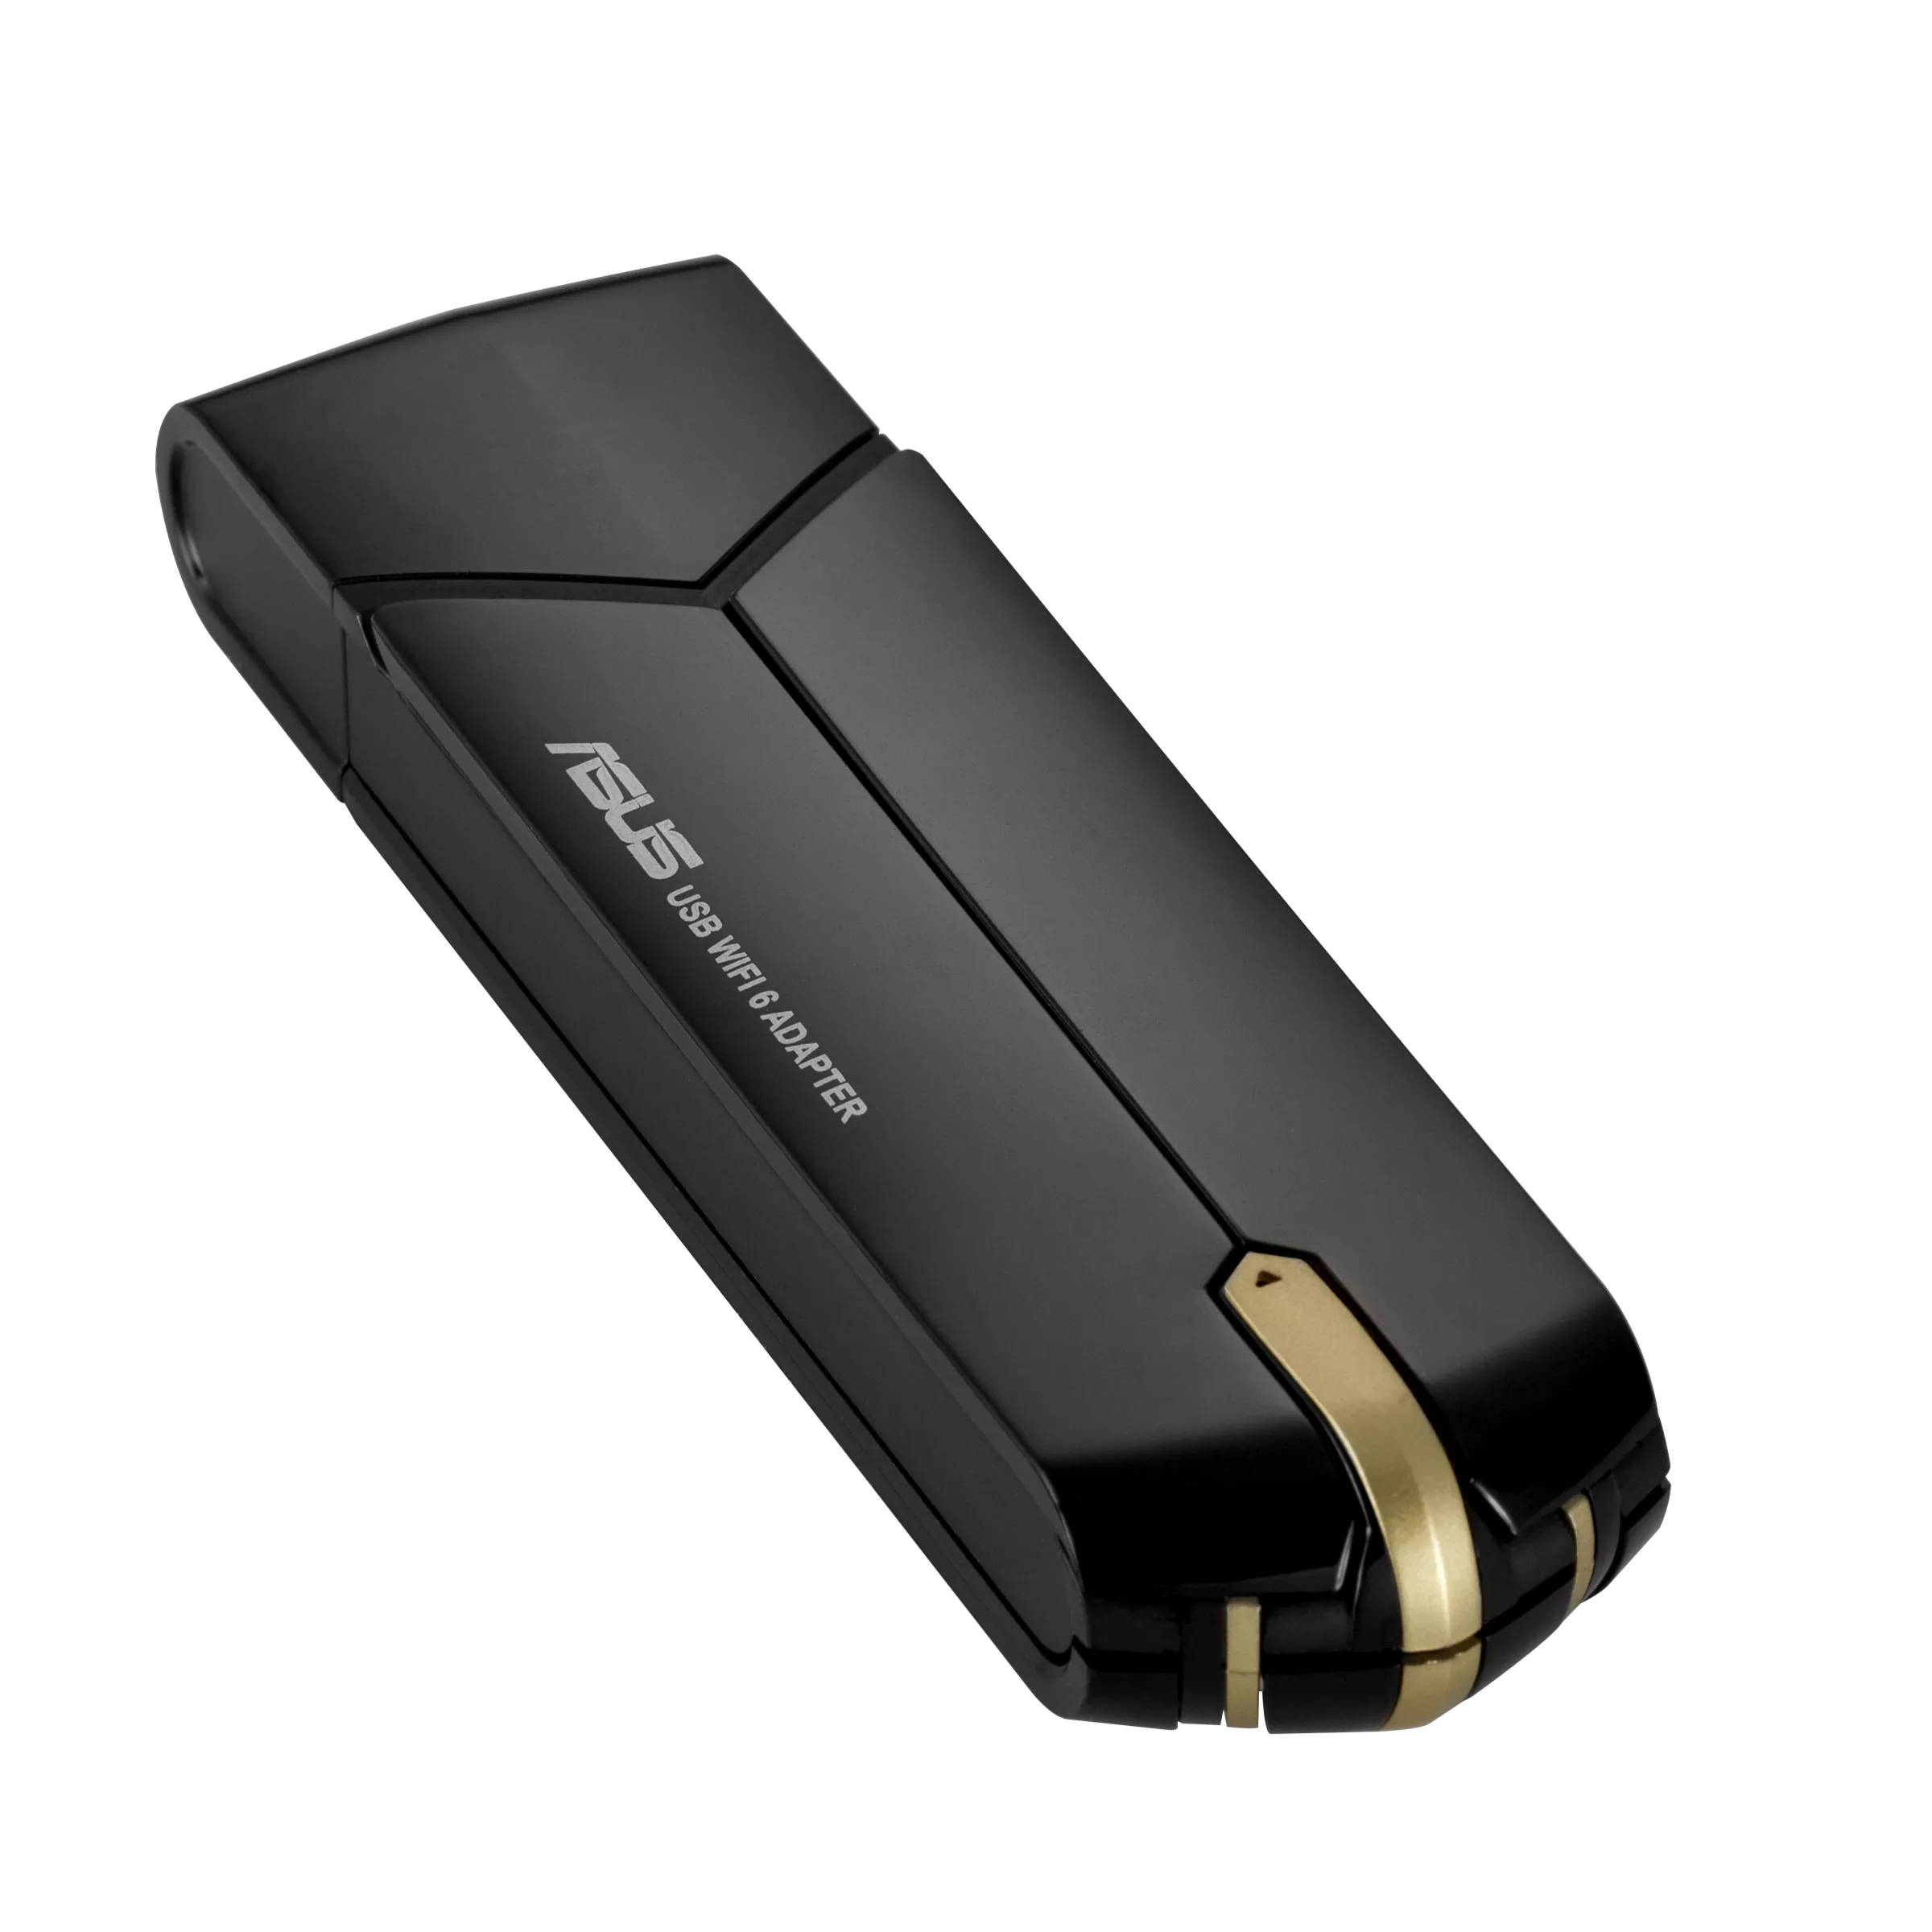 ASUS USB-AX56 WLAN-Adapter